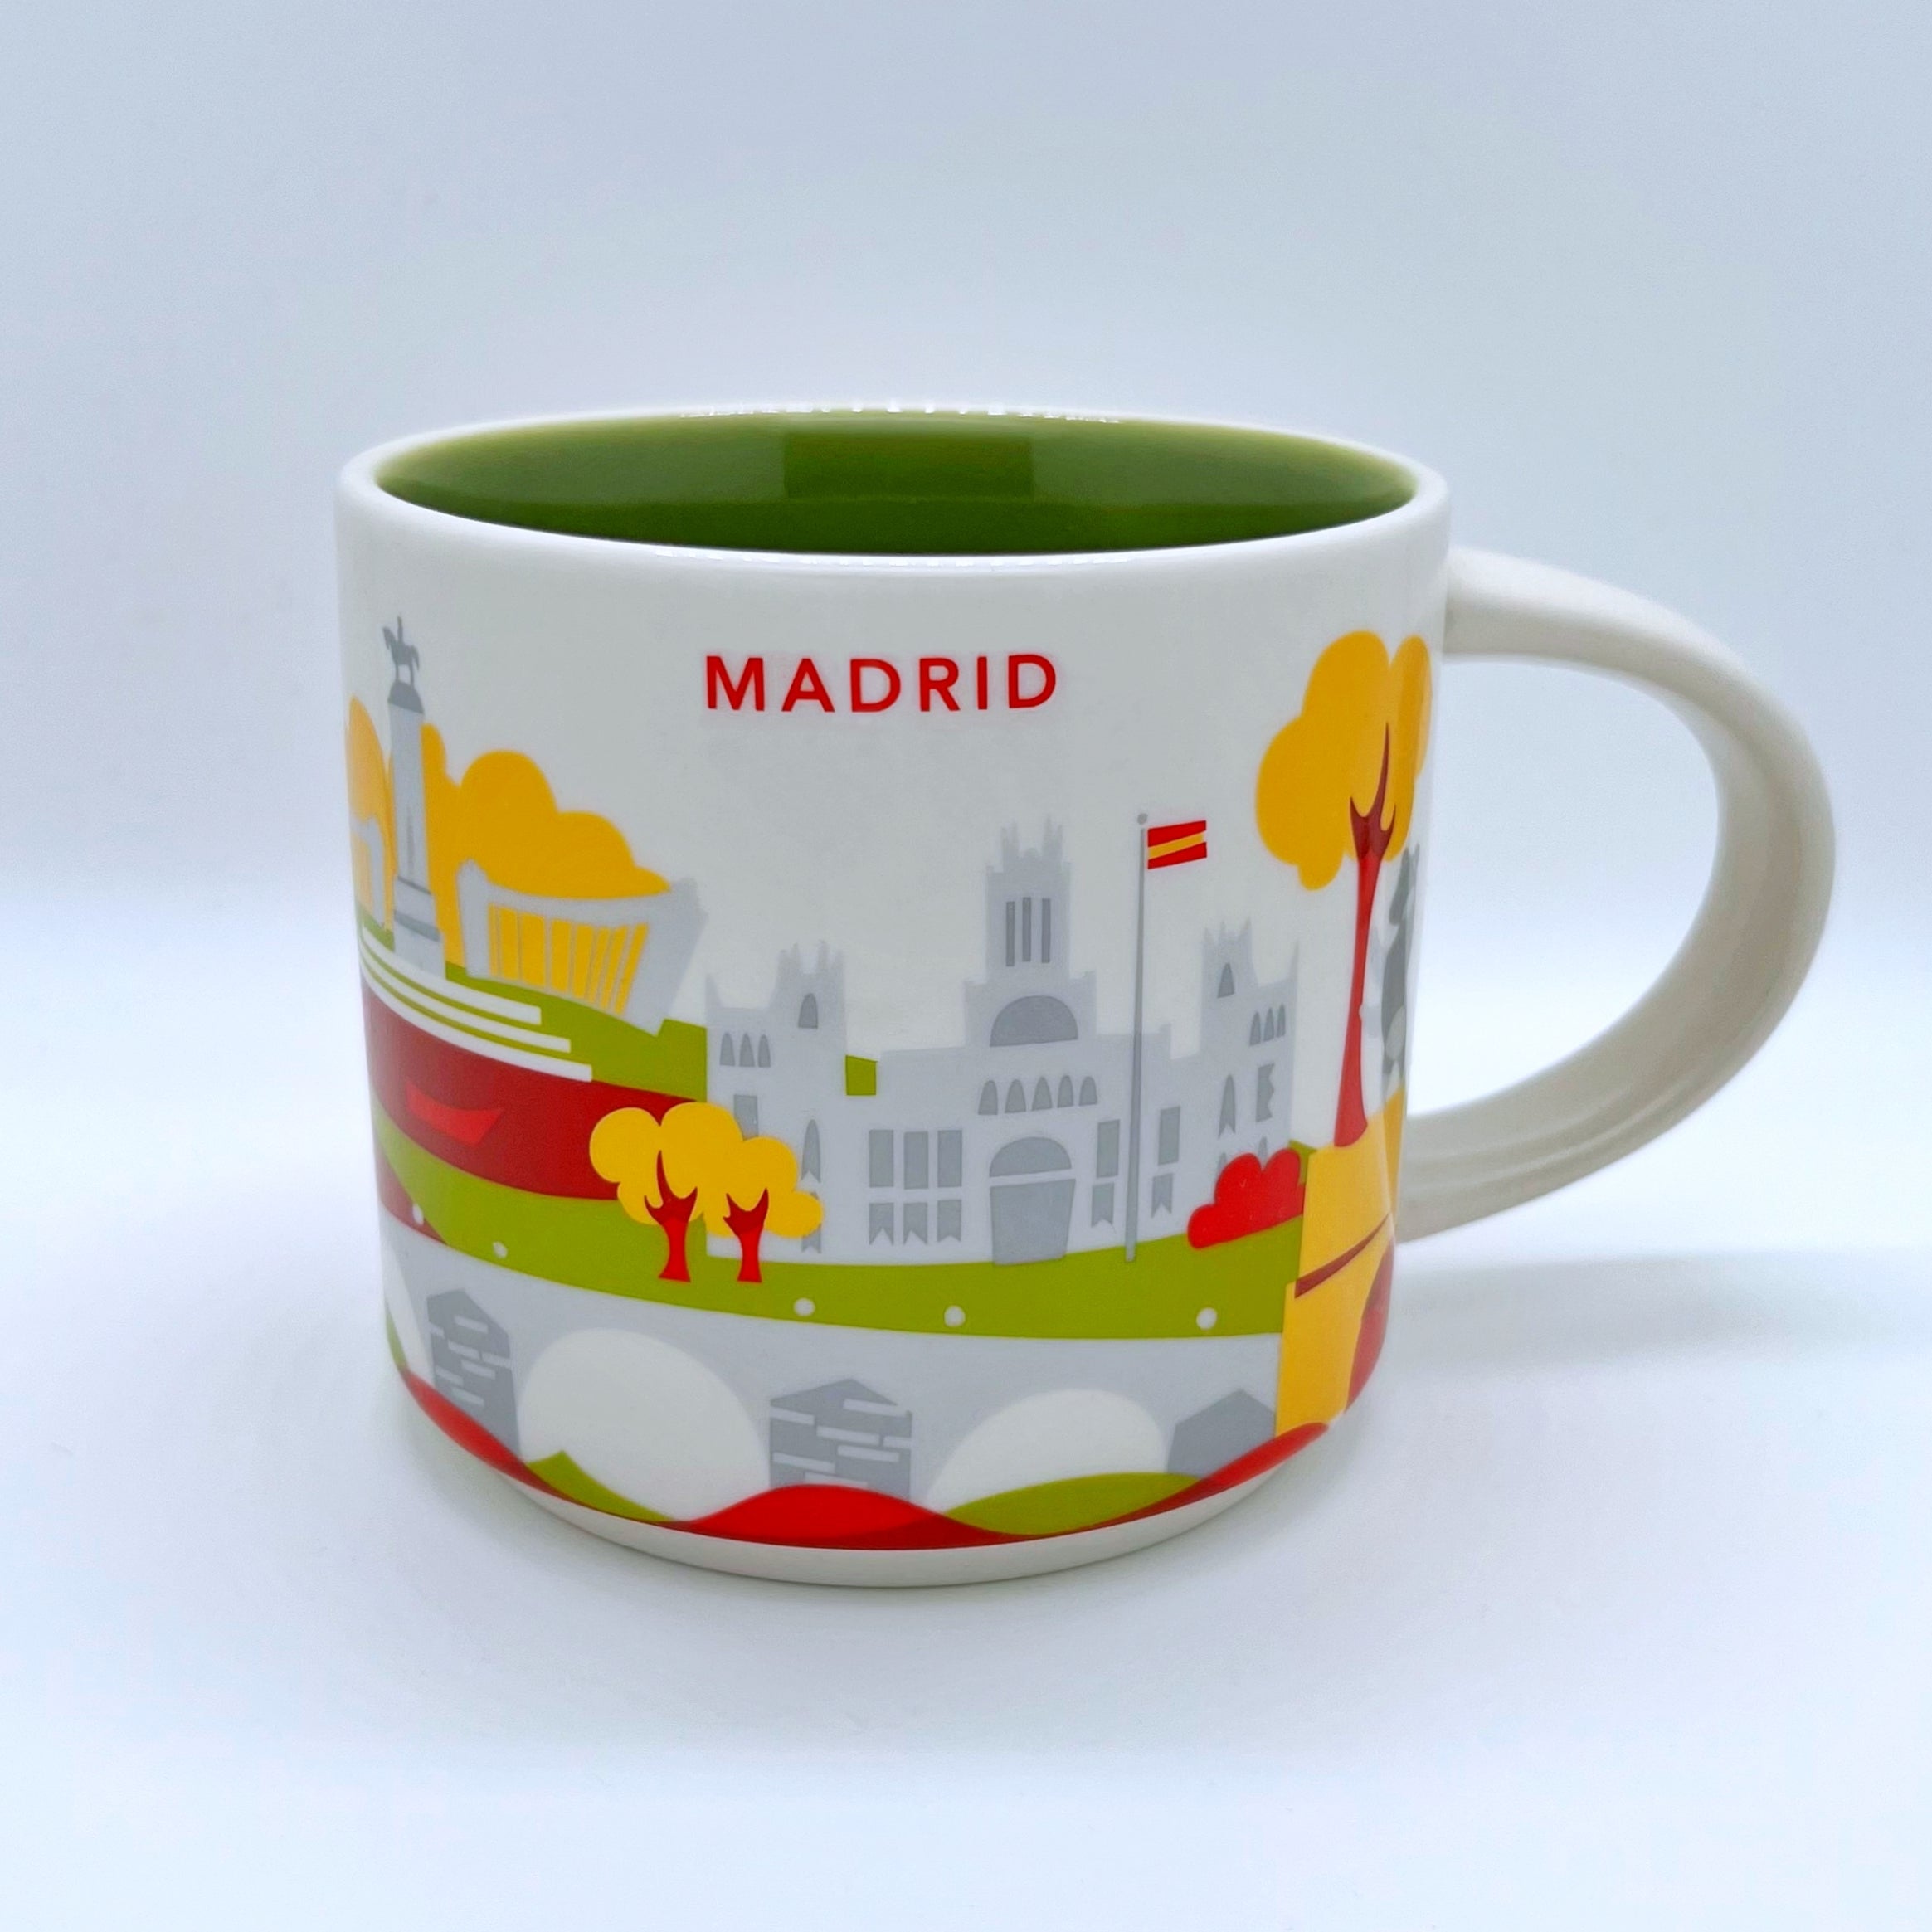 Kaffee Tee und Cappuccino Tasse von Starbucks mit gemalten Bildern aus der Stadt Madrid